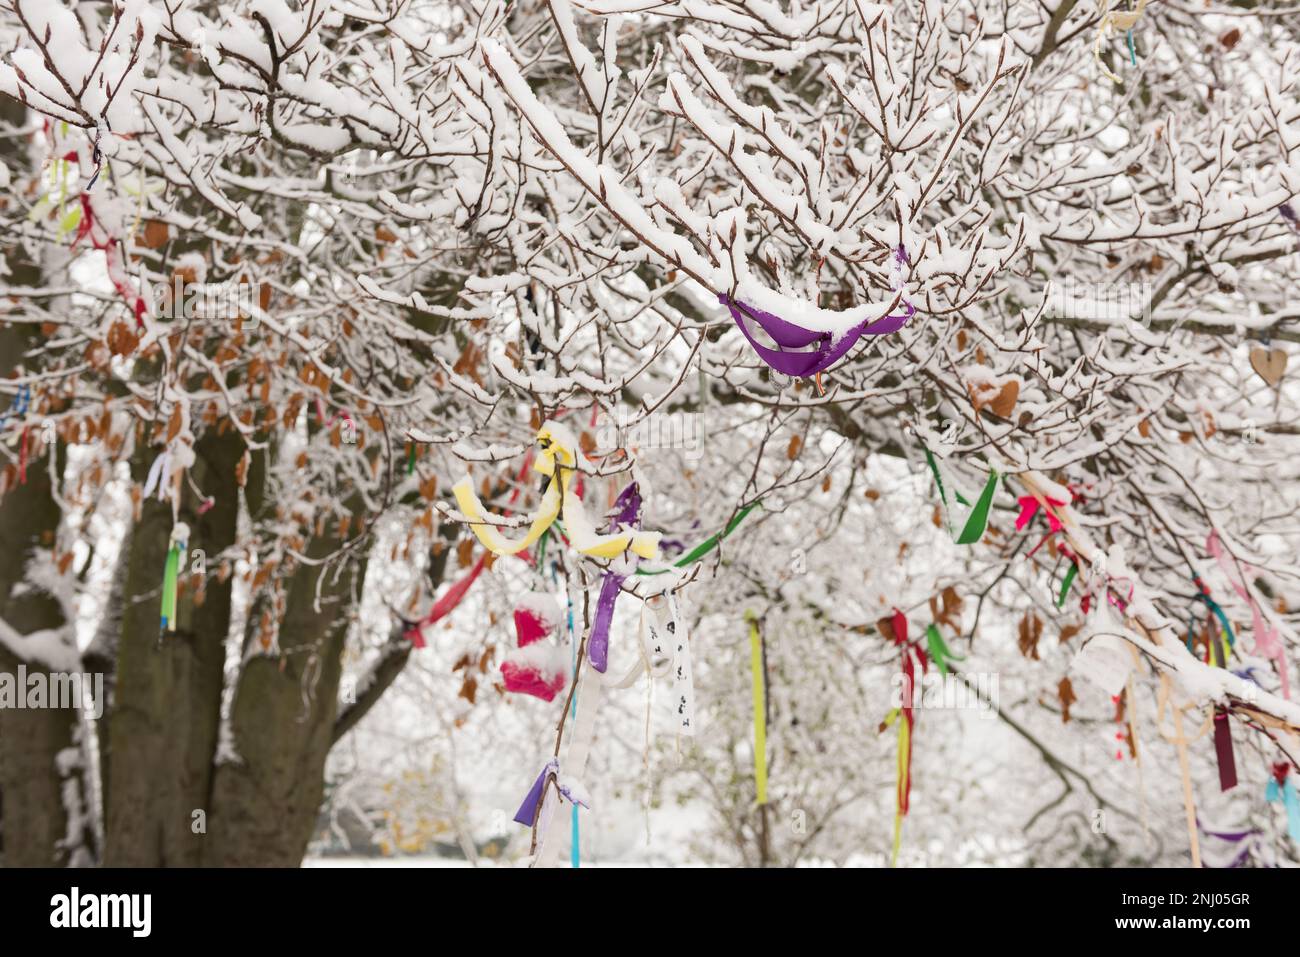 Ruban arbre, rubans colorés, colliers et bandes attachés sur les branches d'un arbre de prière de hêtre près de la barrow à Coldrum long barrow Banque D'Images